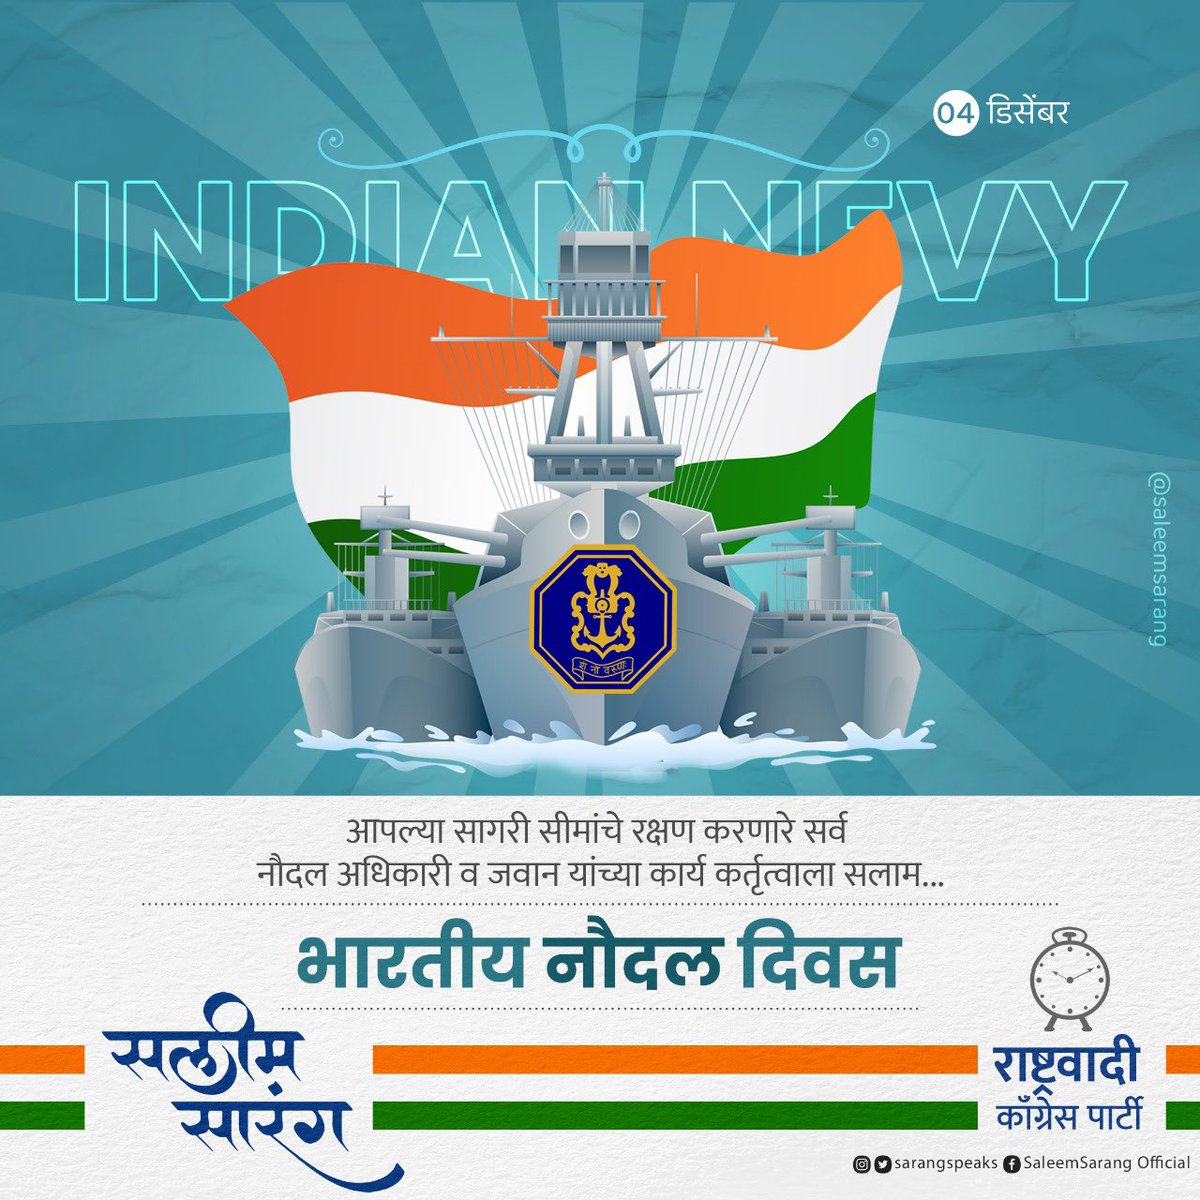 भारताच्या सागरी सीमारेषांचे प्राणपणाने रक्षण करणार्‍या देशाच्या नौदलातील जाँबाज नौदल अधिकारी व जवानांच्या समर्पण व शौर्याला सलाम!

#IndianNavy #IndianNavyDay2023